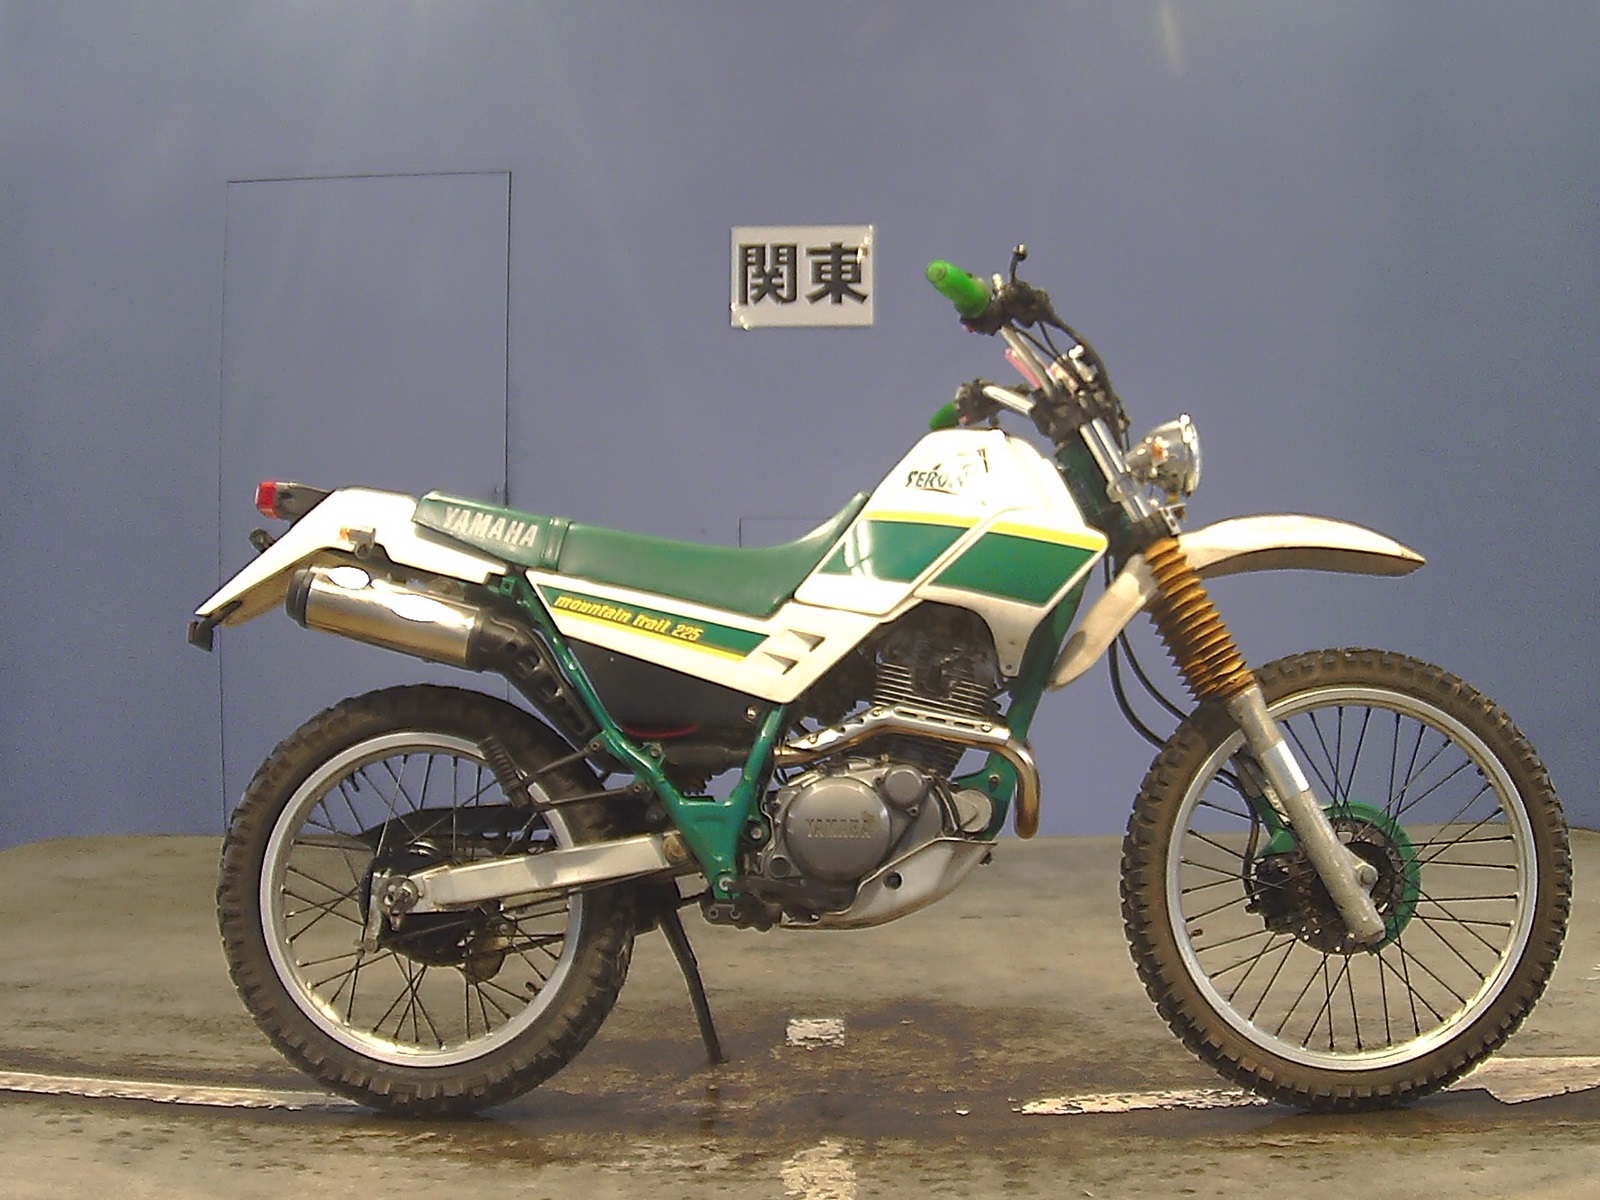 Мотоцикл yamaha tw 225 2006 цена, фото, характеристики, обзор, сравнение на базамото